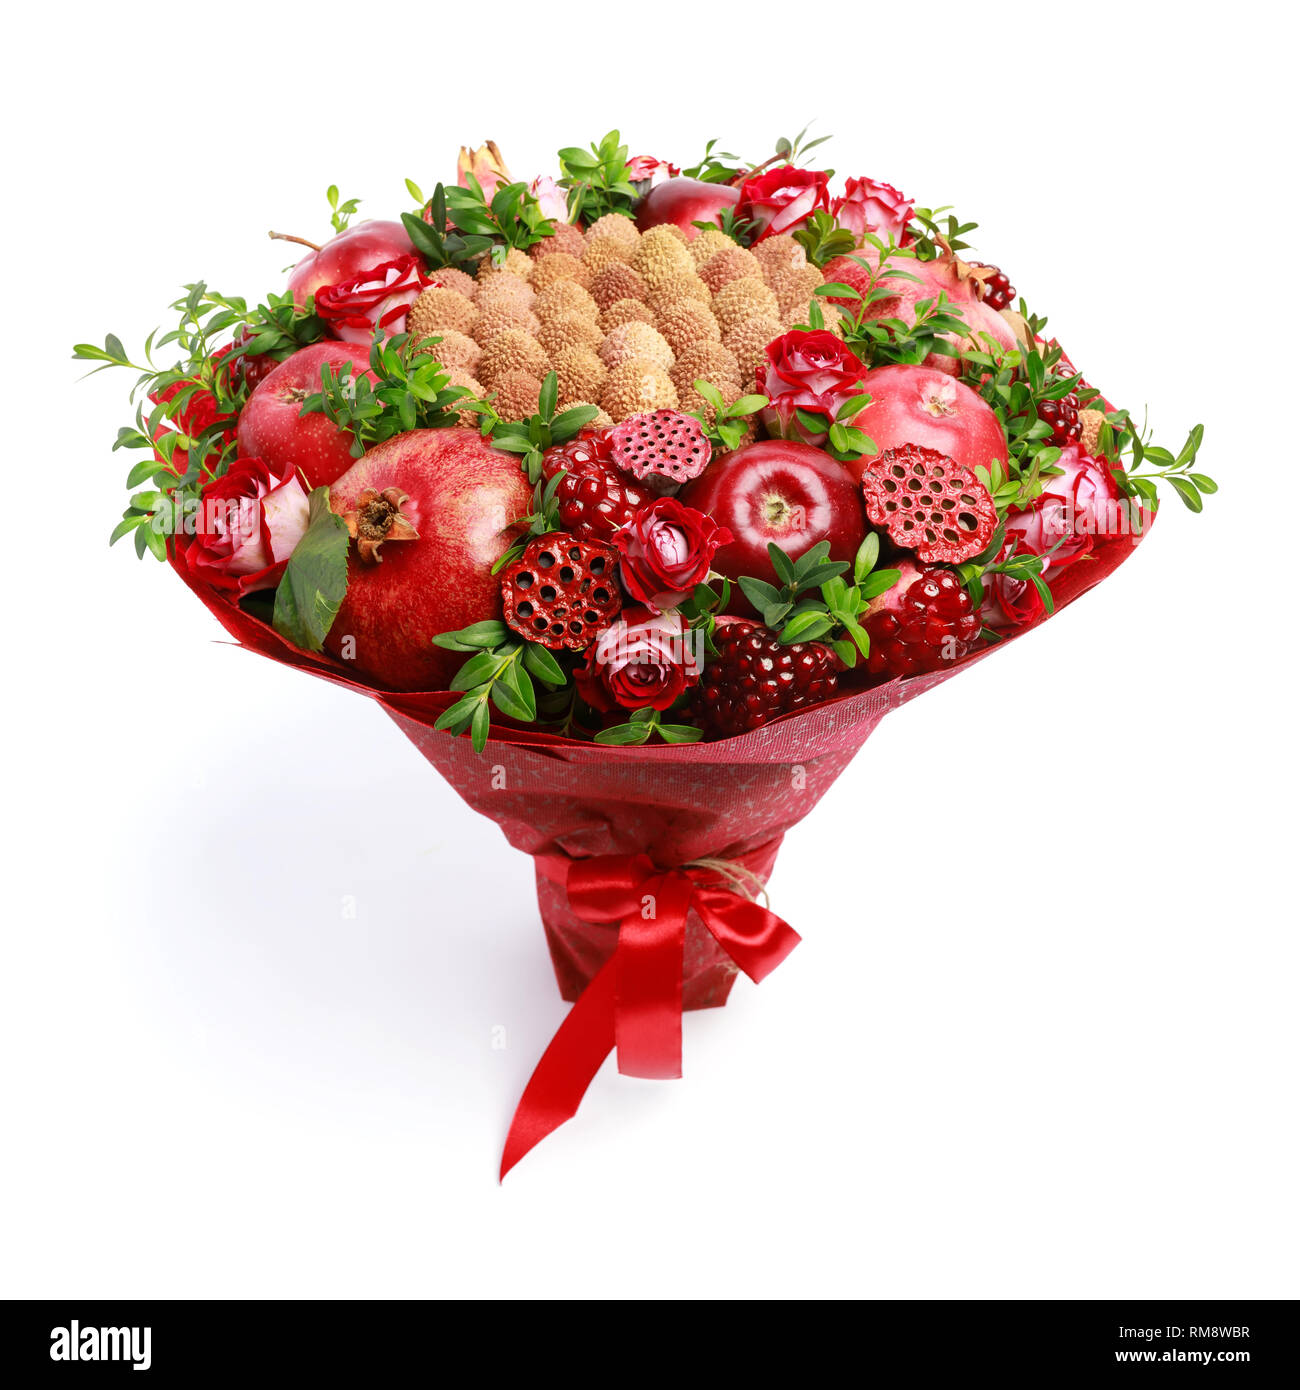 In casa unico bouquet commestibile costituito da frutta rossa e fiori come un dono isolato su sfondo bianco Foto Stock